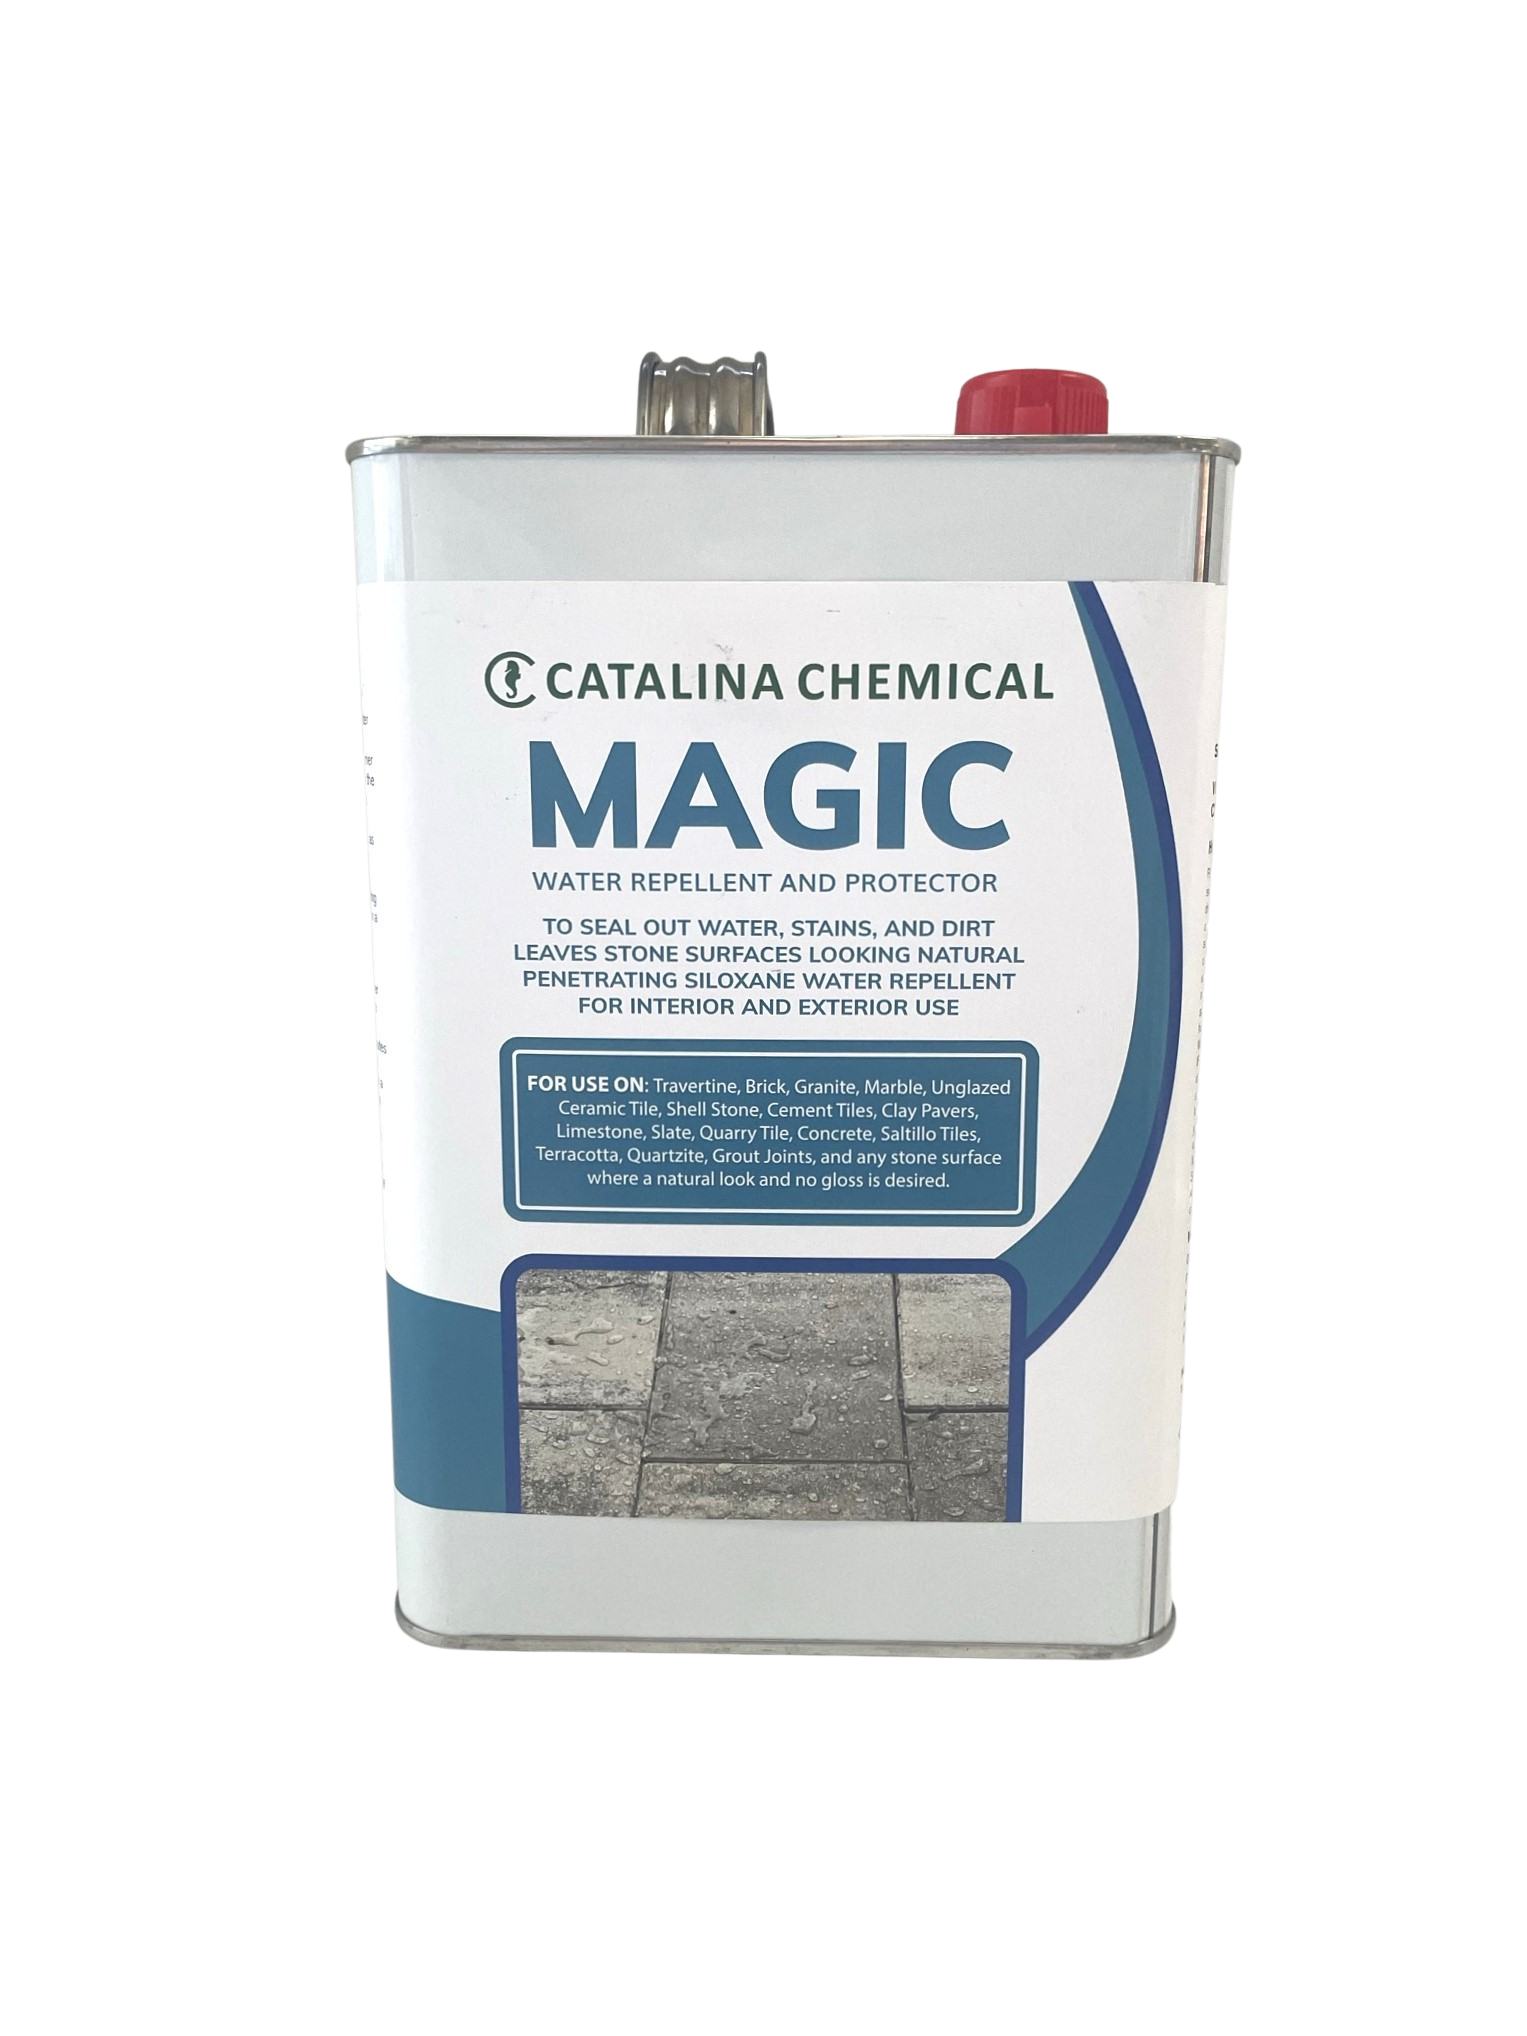 Natural Look Stone Sealer and Water Repellant- MAGIC — Catalina Chemical